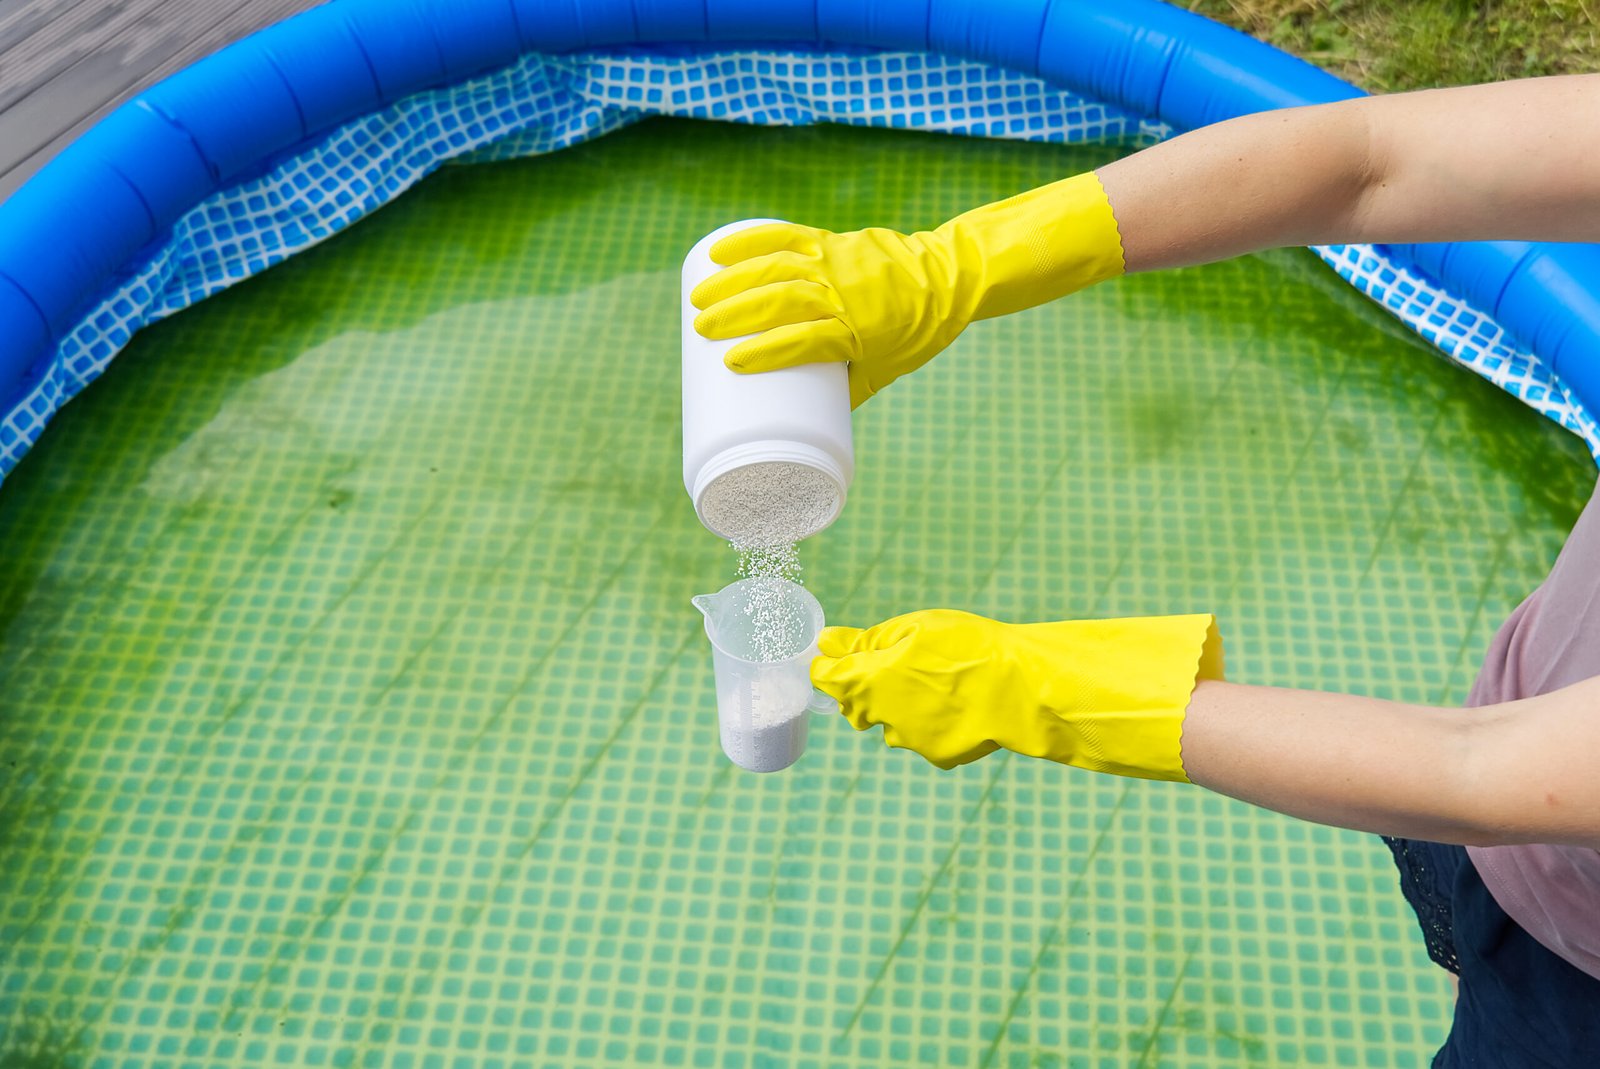 How to Keep a Kiddie Pool Clean-Add chlorine